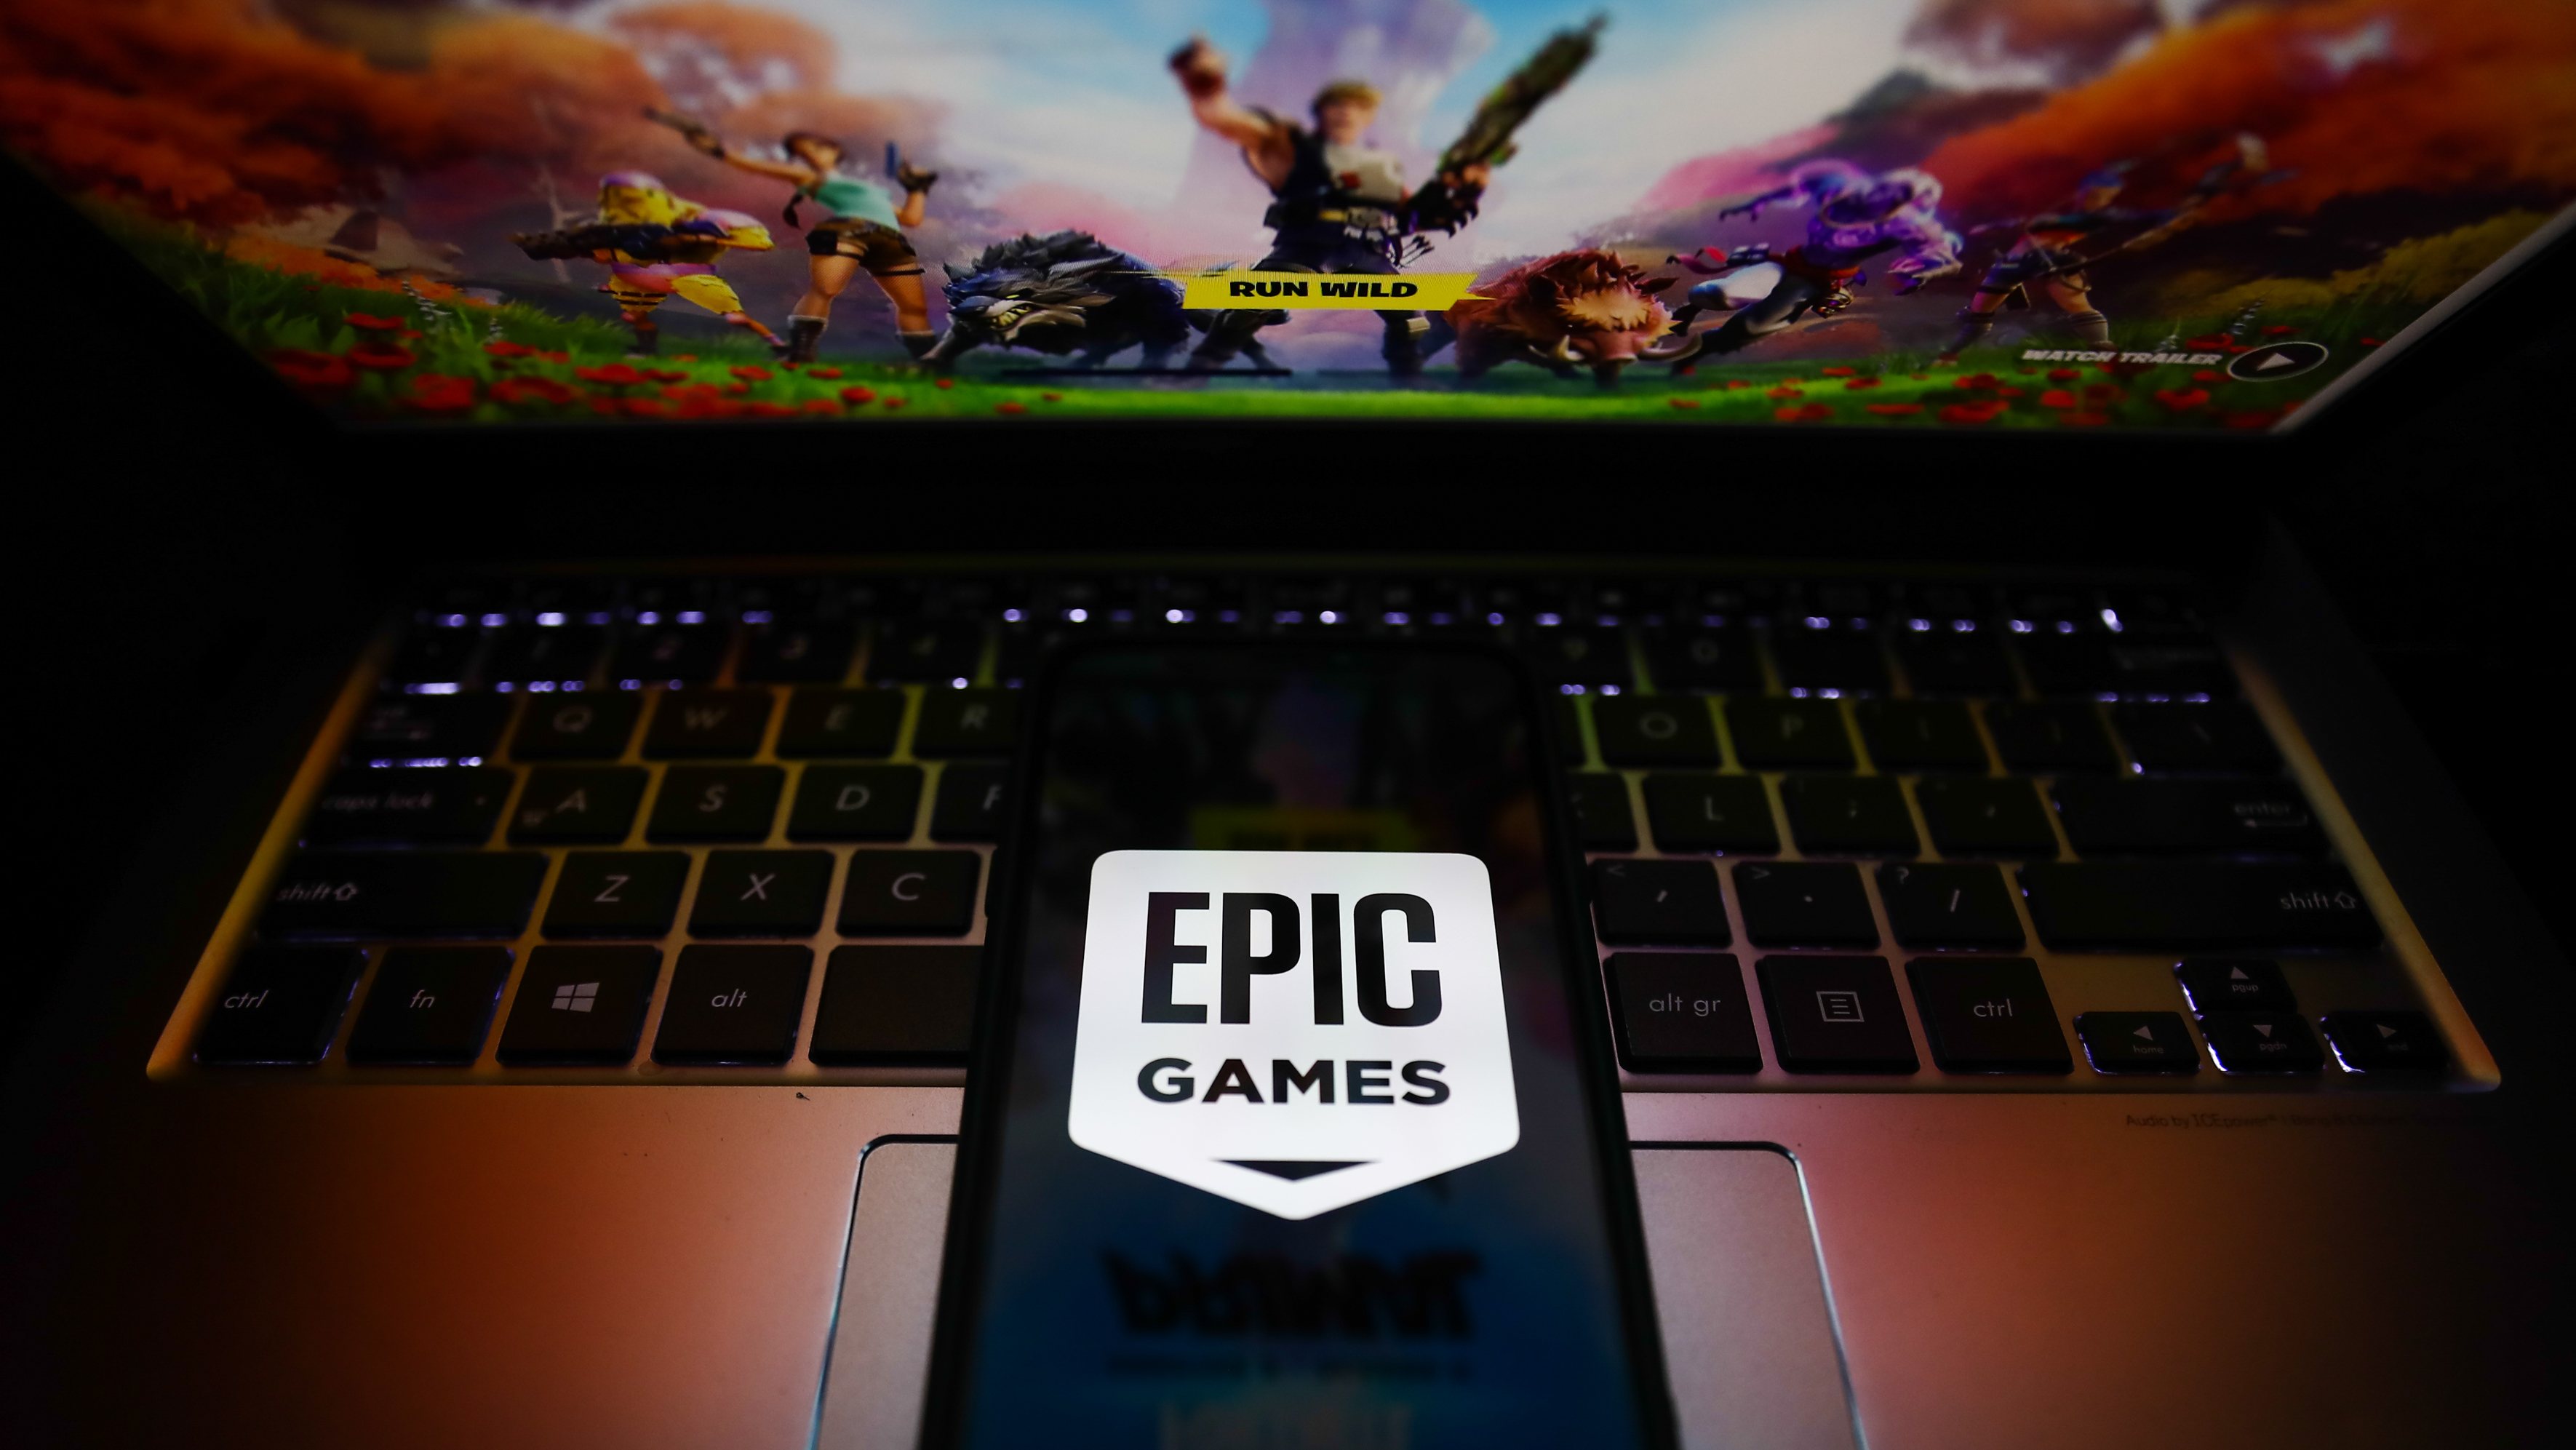 Fortnite: como mudar o e-mail da conta Epic Games